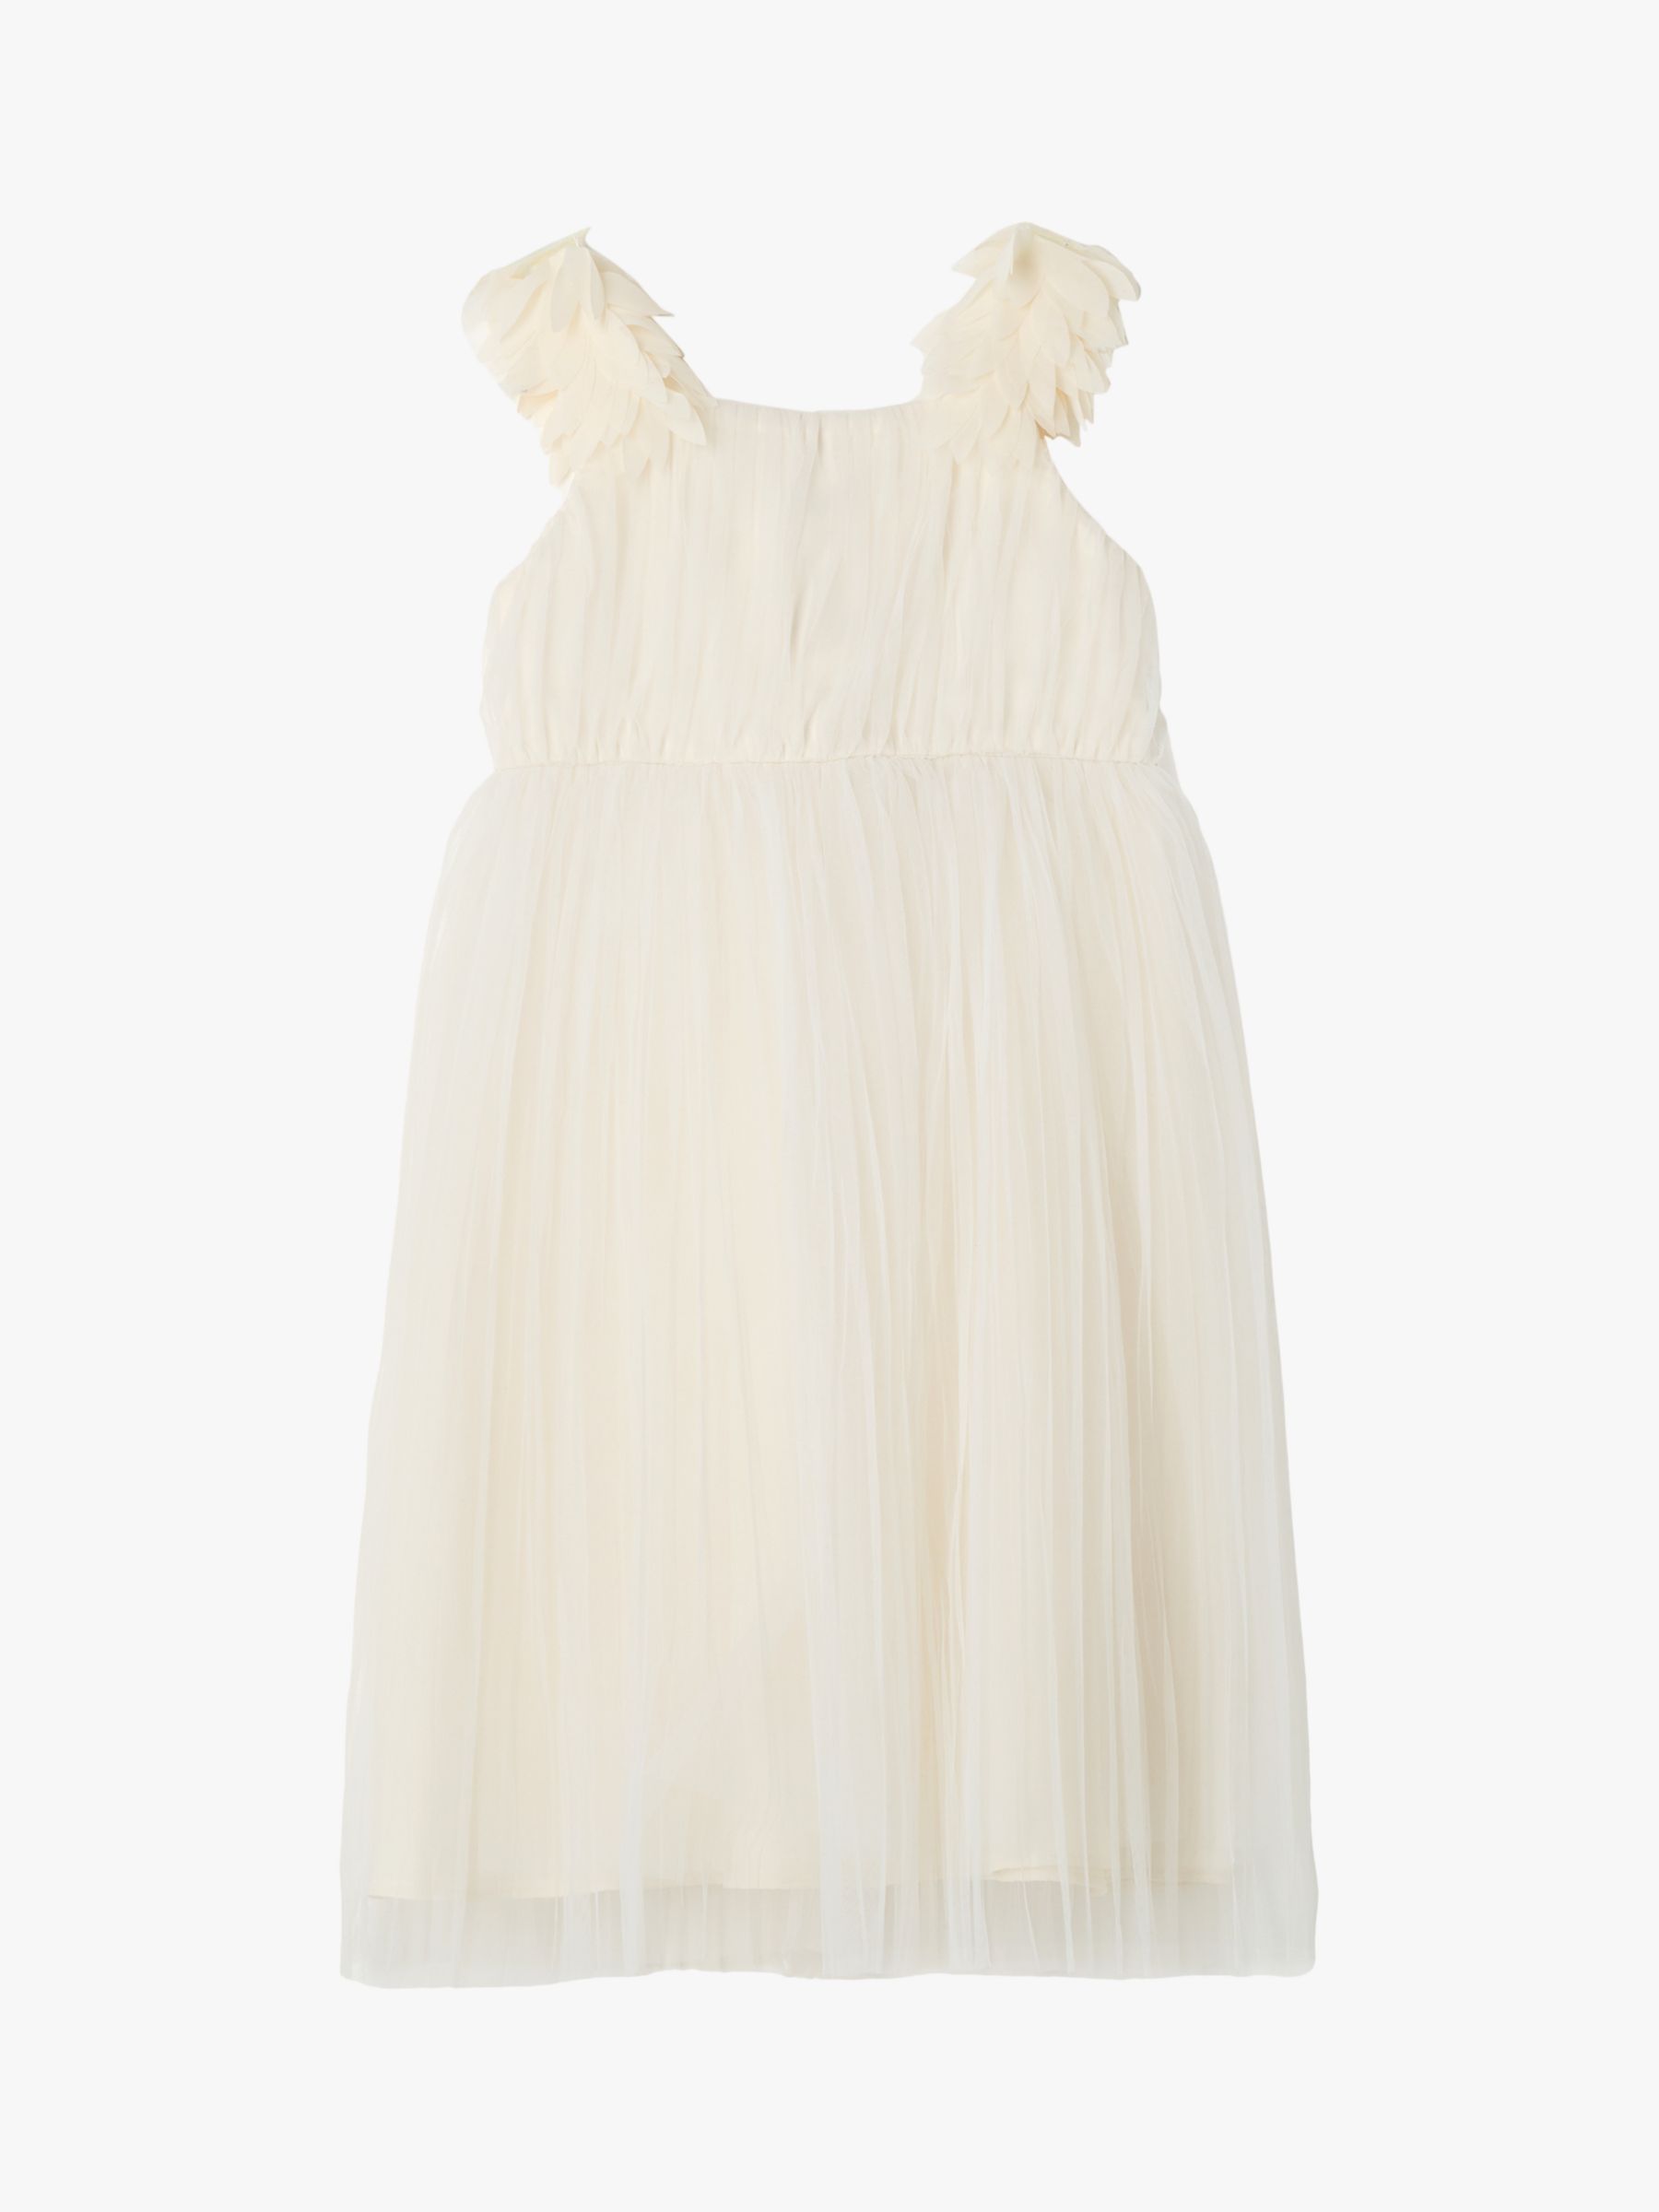 Angel & Rocket Valerie Petal Shoulder Bridesmaid Dress, White, 3 years